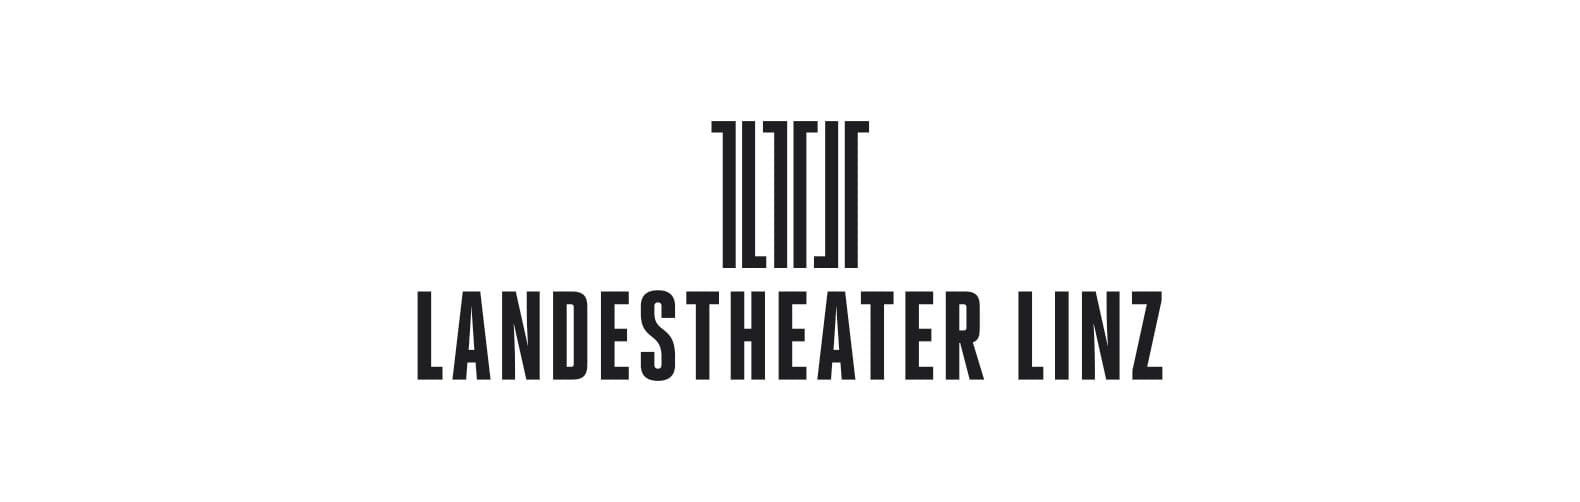 Landestheater Linz Corporate Design